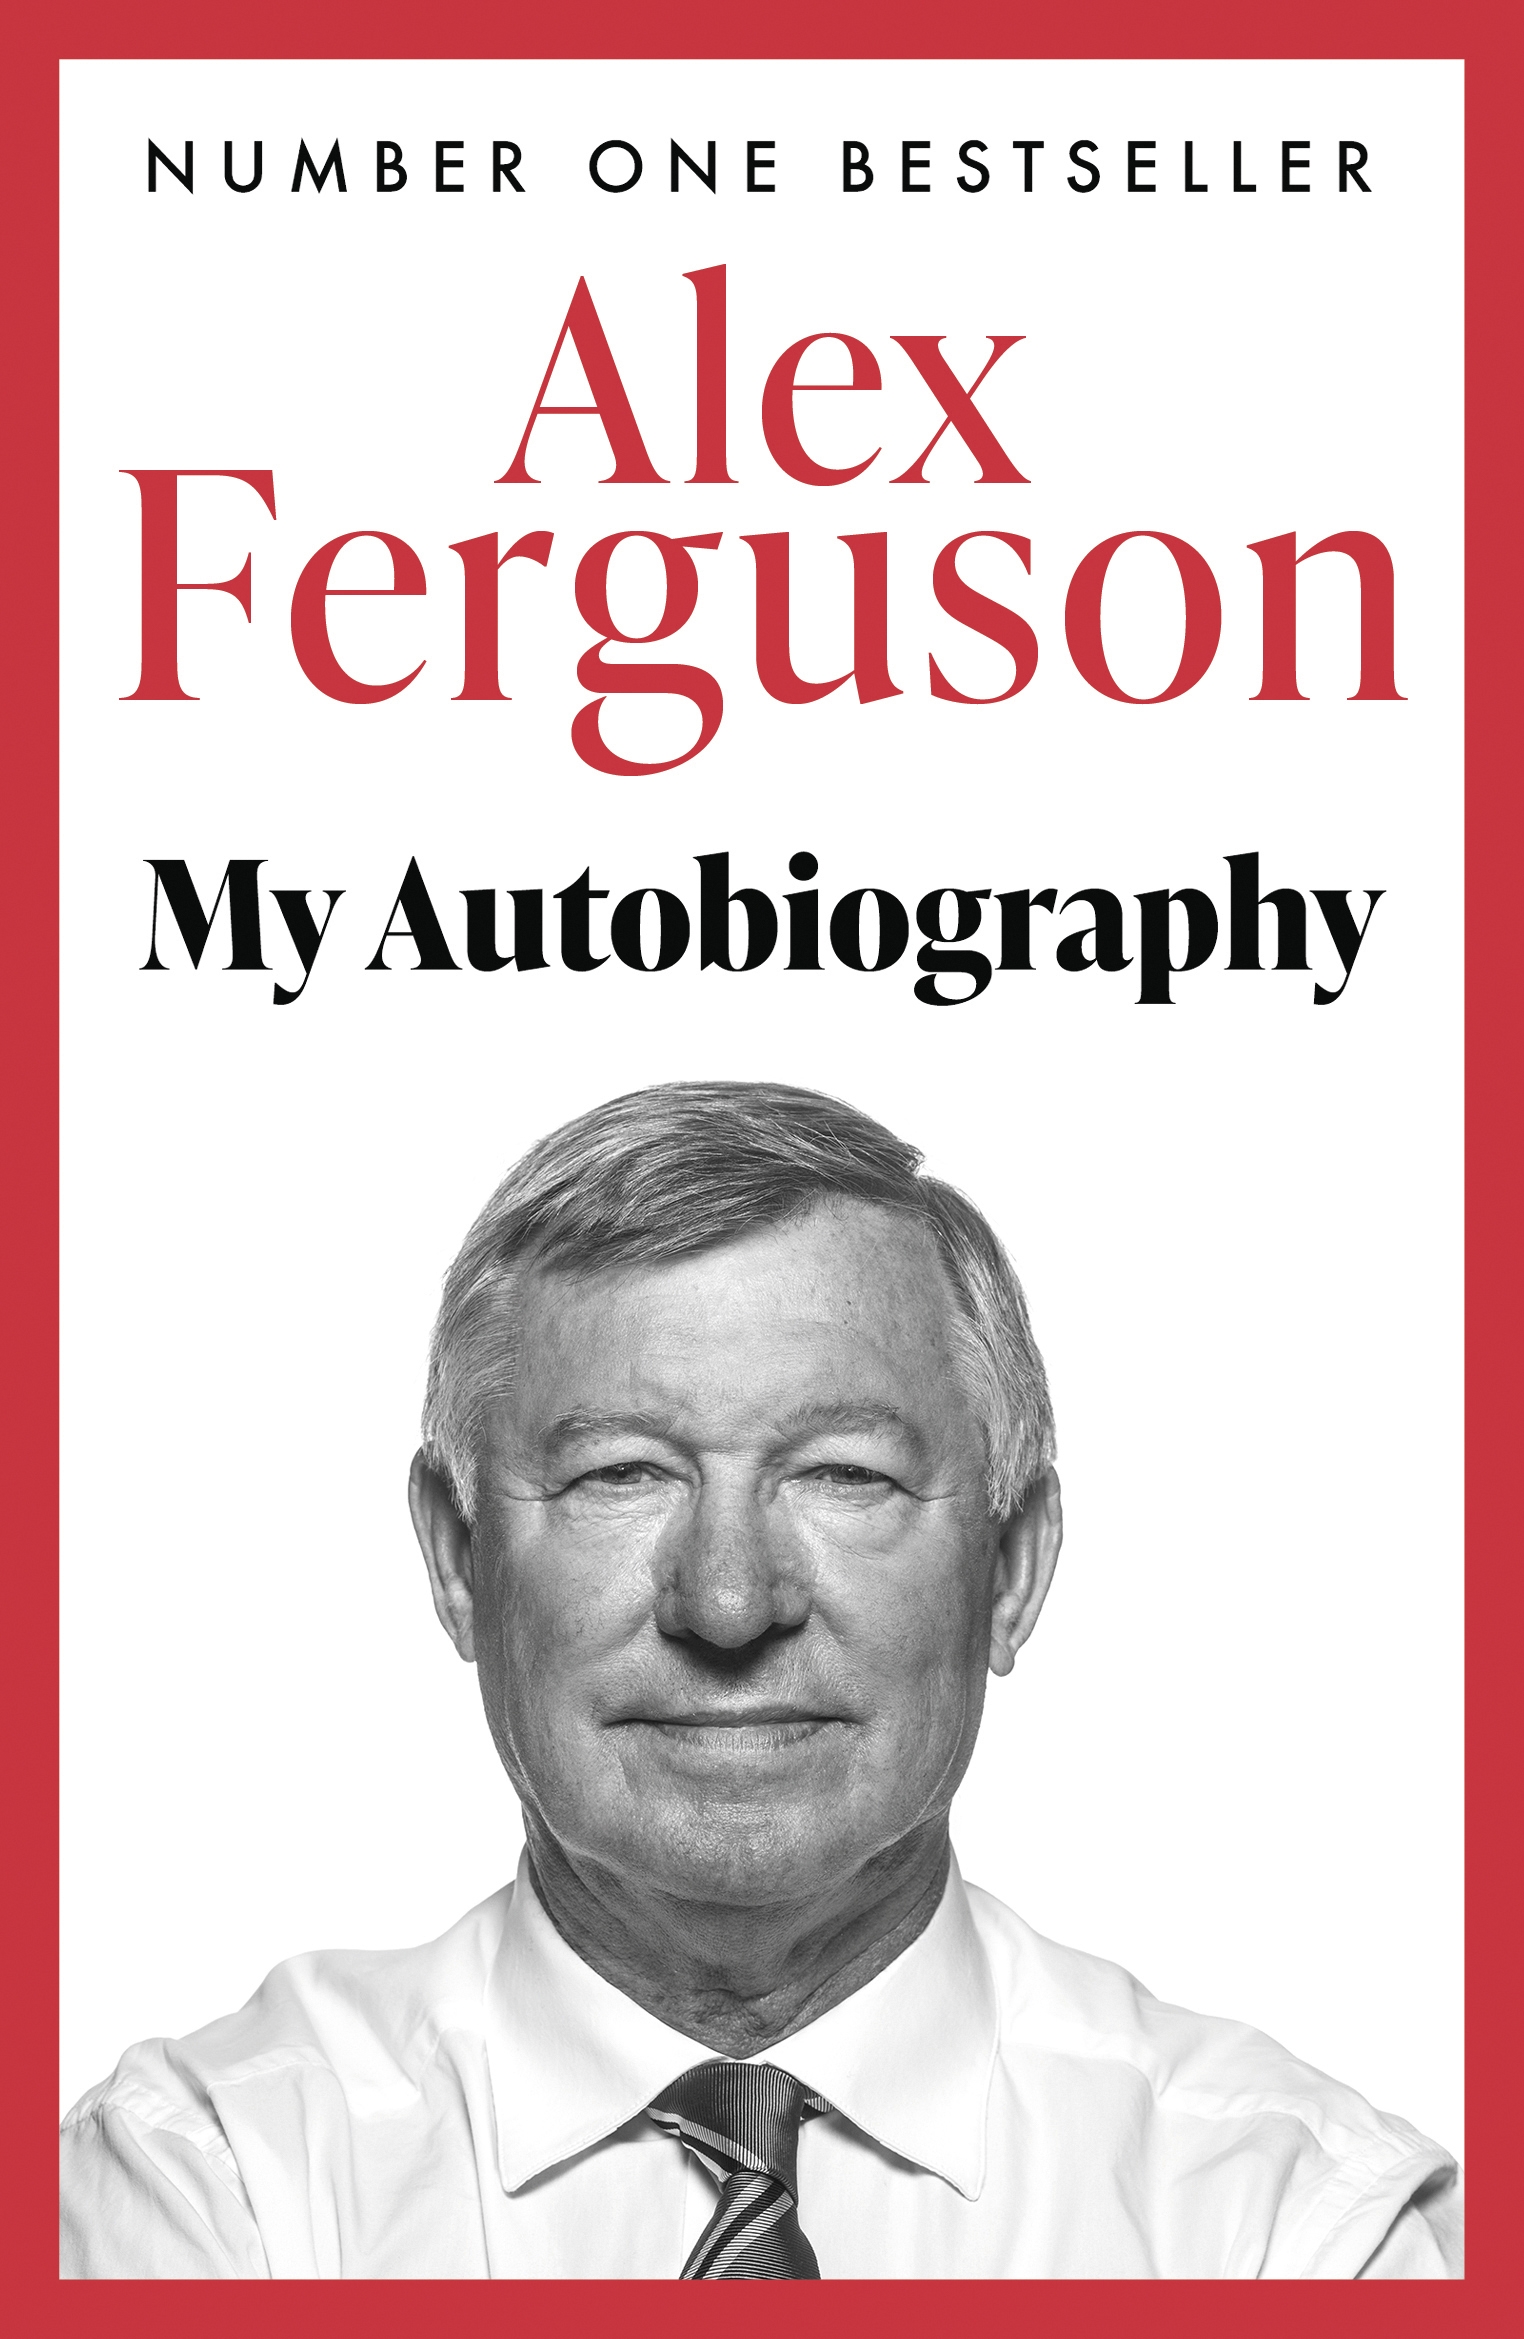 Alex Ferguson biography